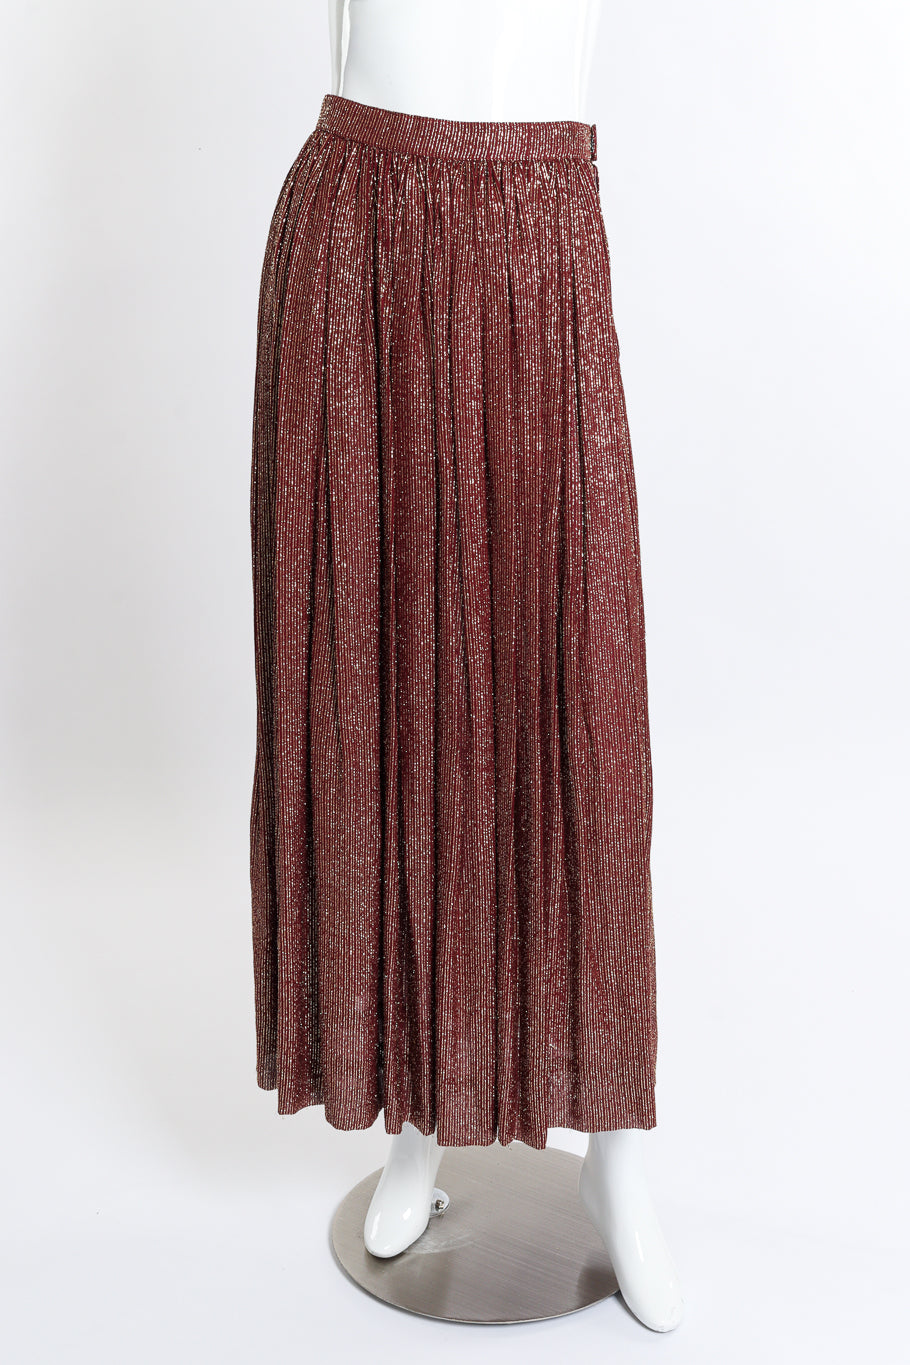 Vintage Adolfo Lamé Blouse & Pleated Skirt Set skirt front on mannequin @recess la